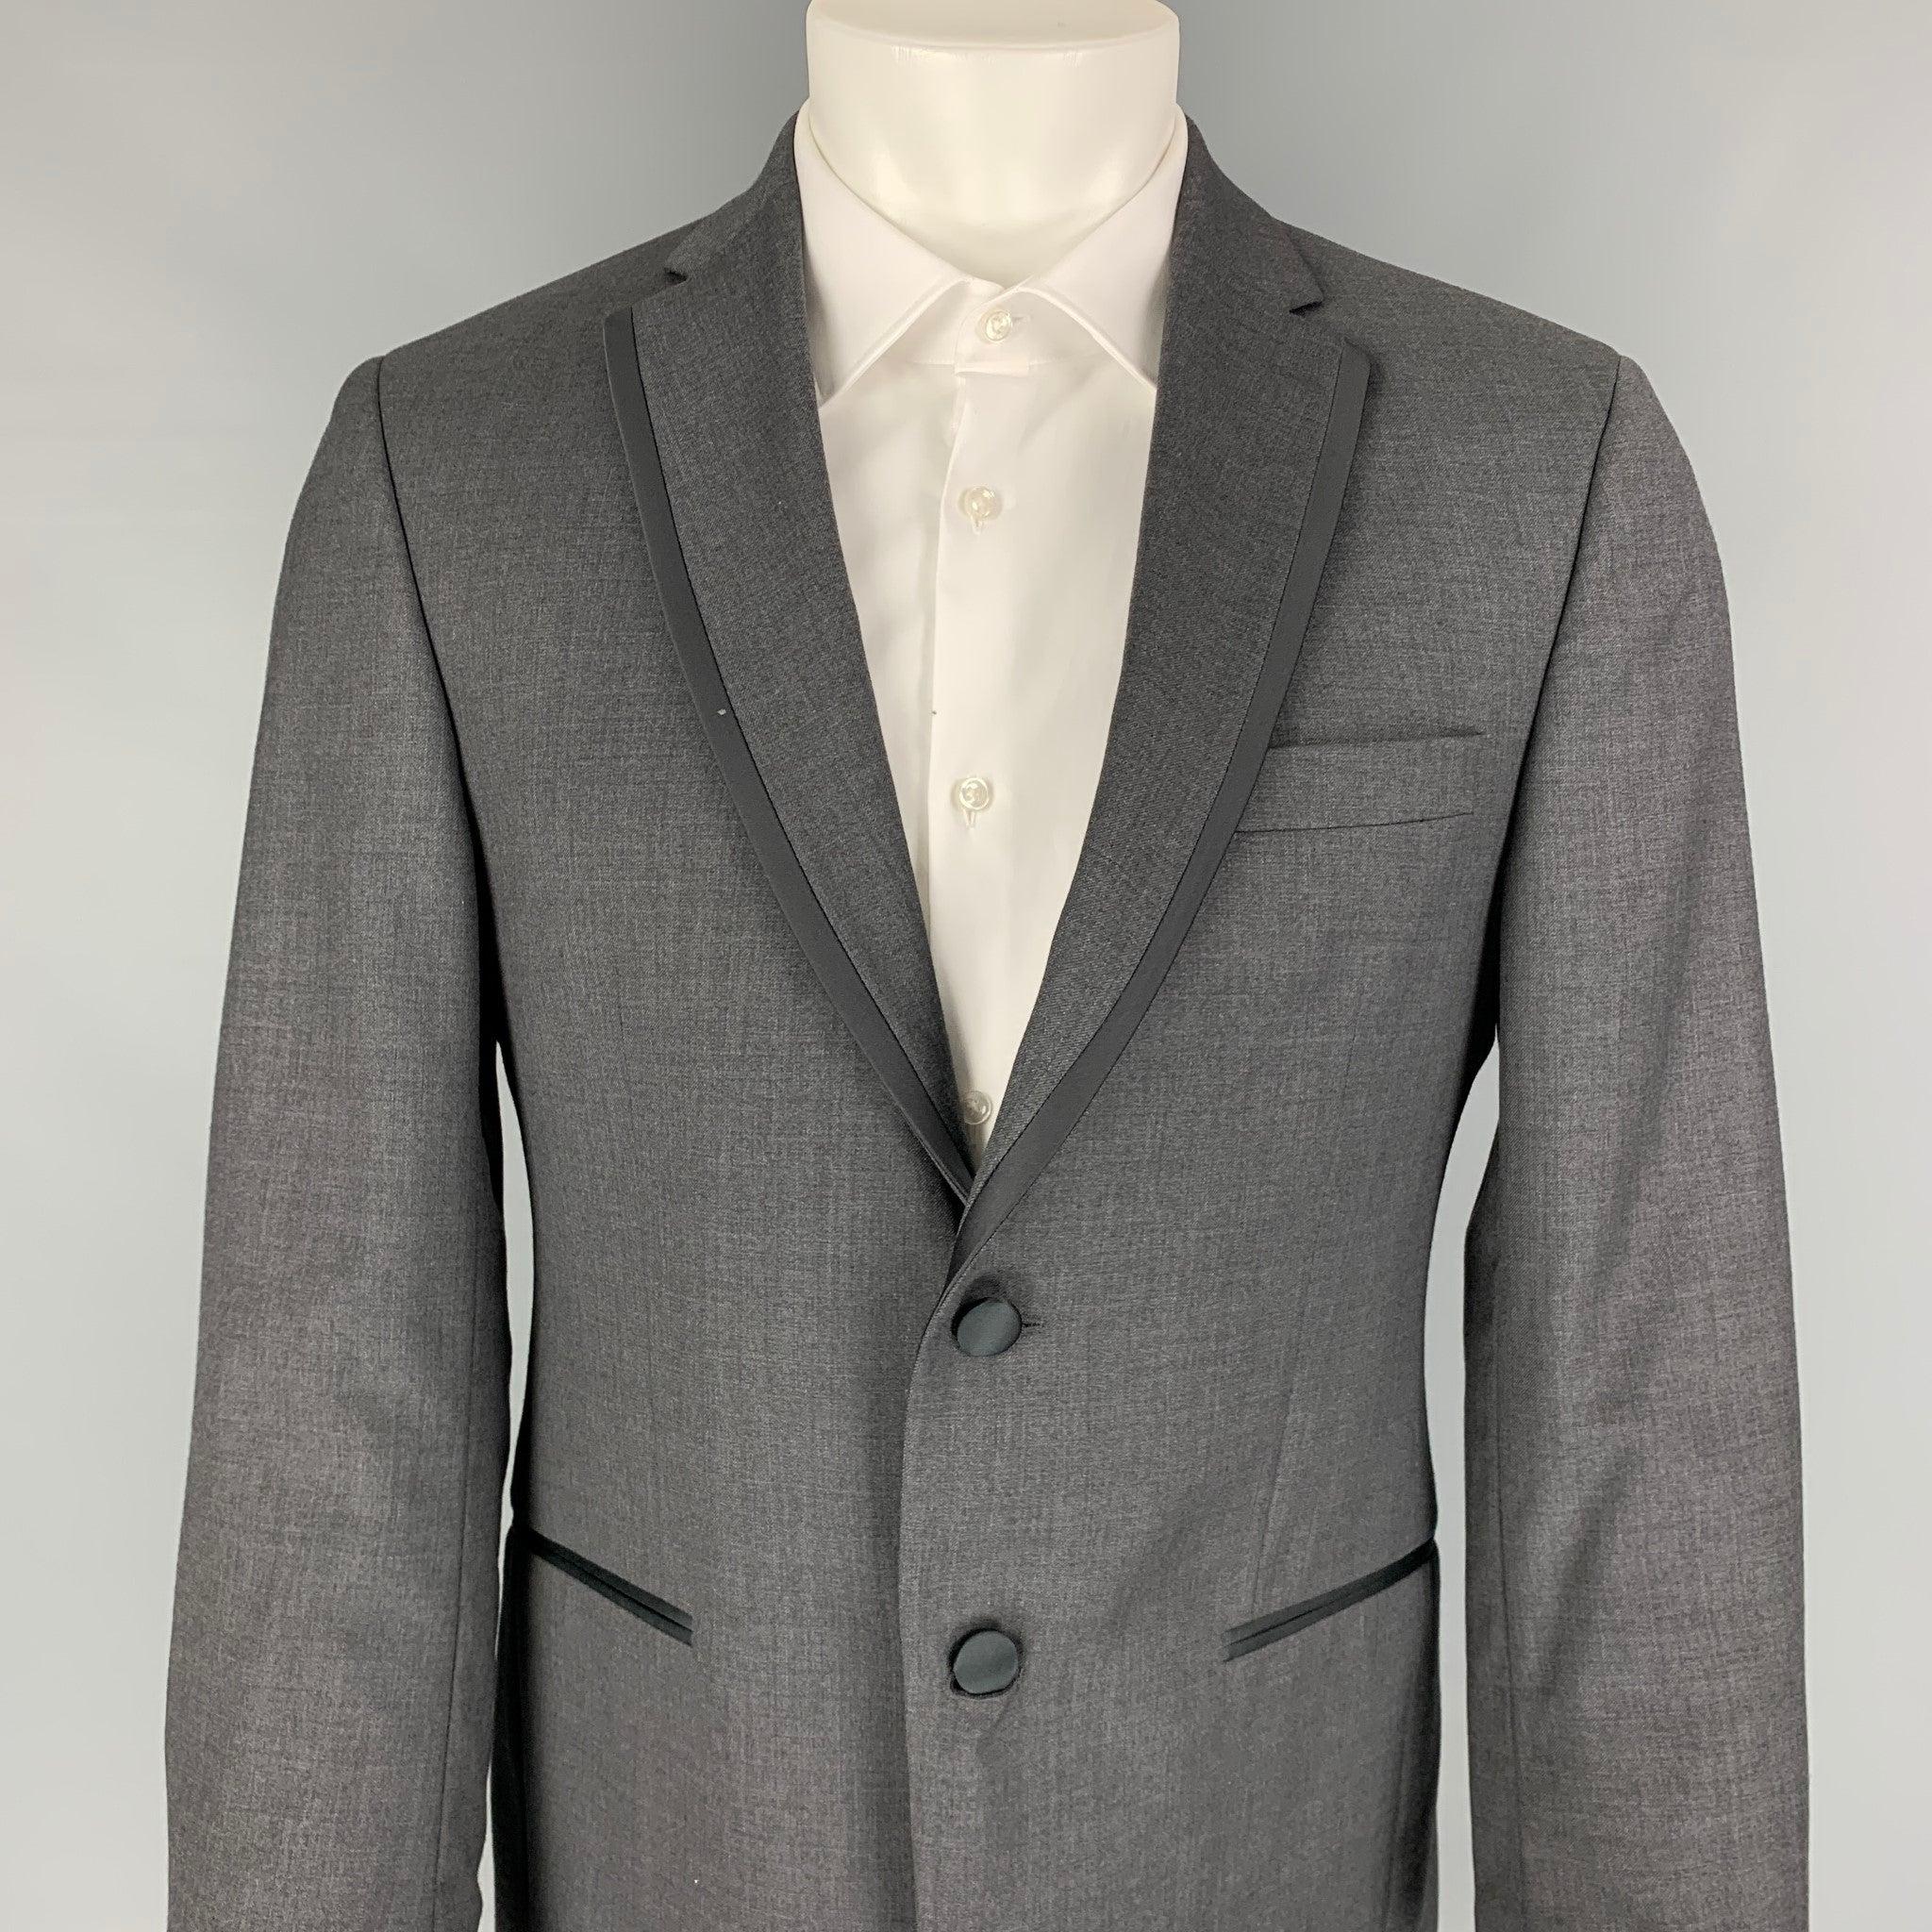 Le manteau de sport BLACK by Vera WANG est en laine grise et noire avec une doublure complète. Il présente un revers à cran, des bordures en satin, une double fente au dos, des poches fendues et une fermeture à double bouton.
Excellent
Etat